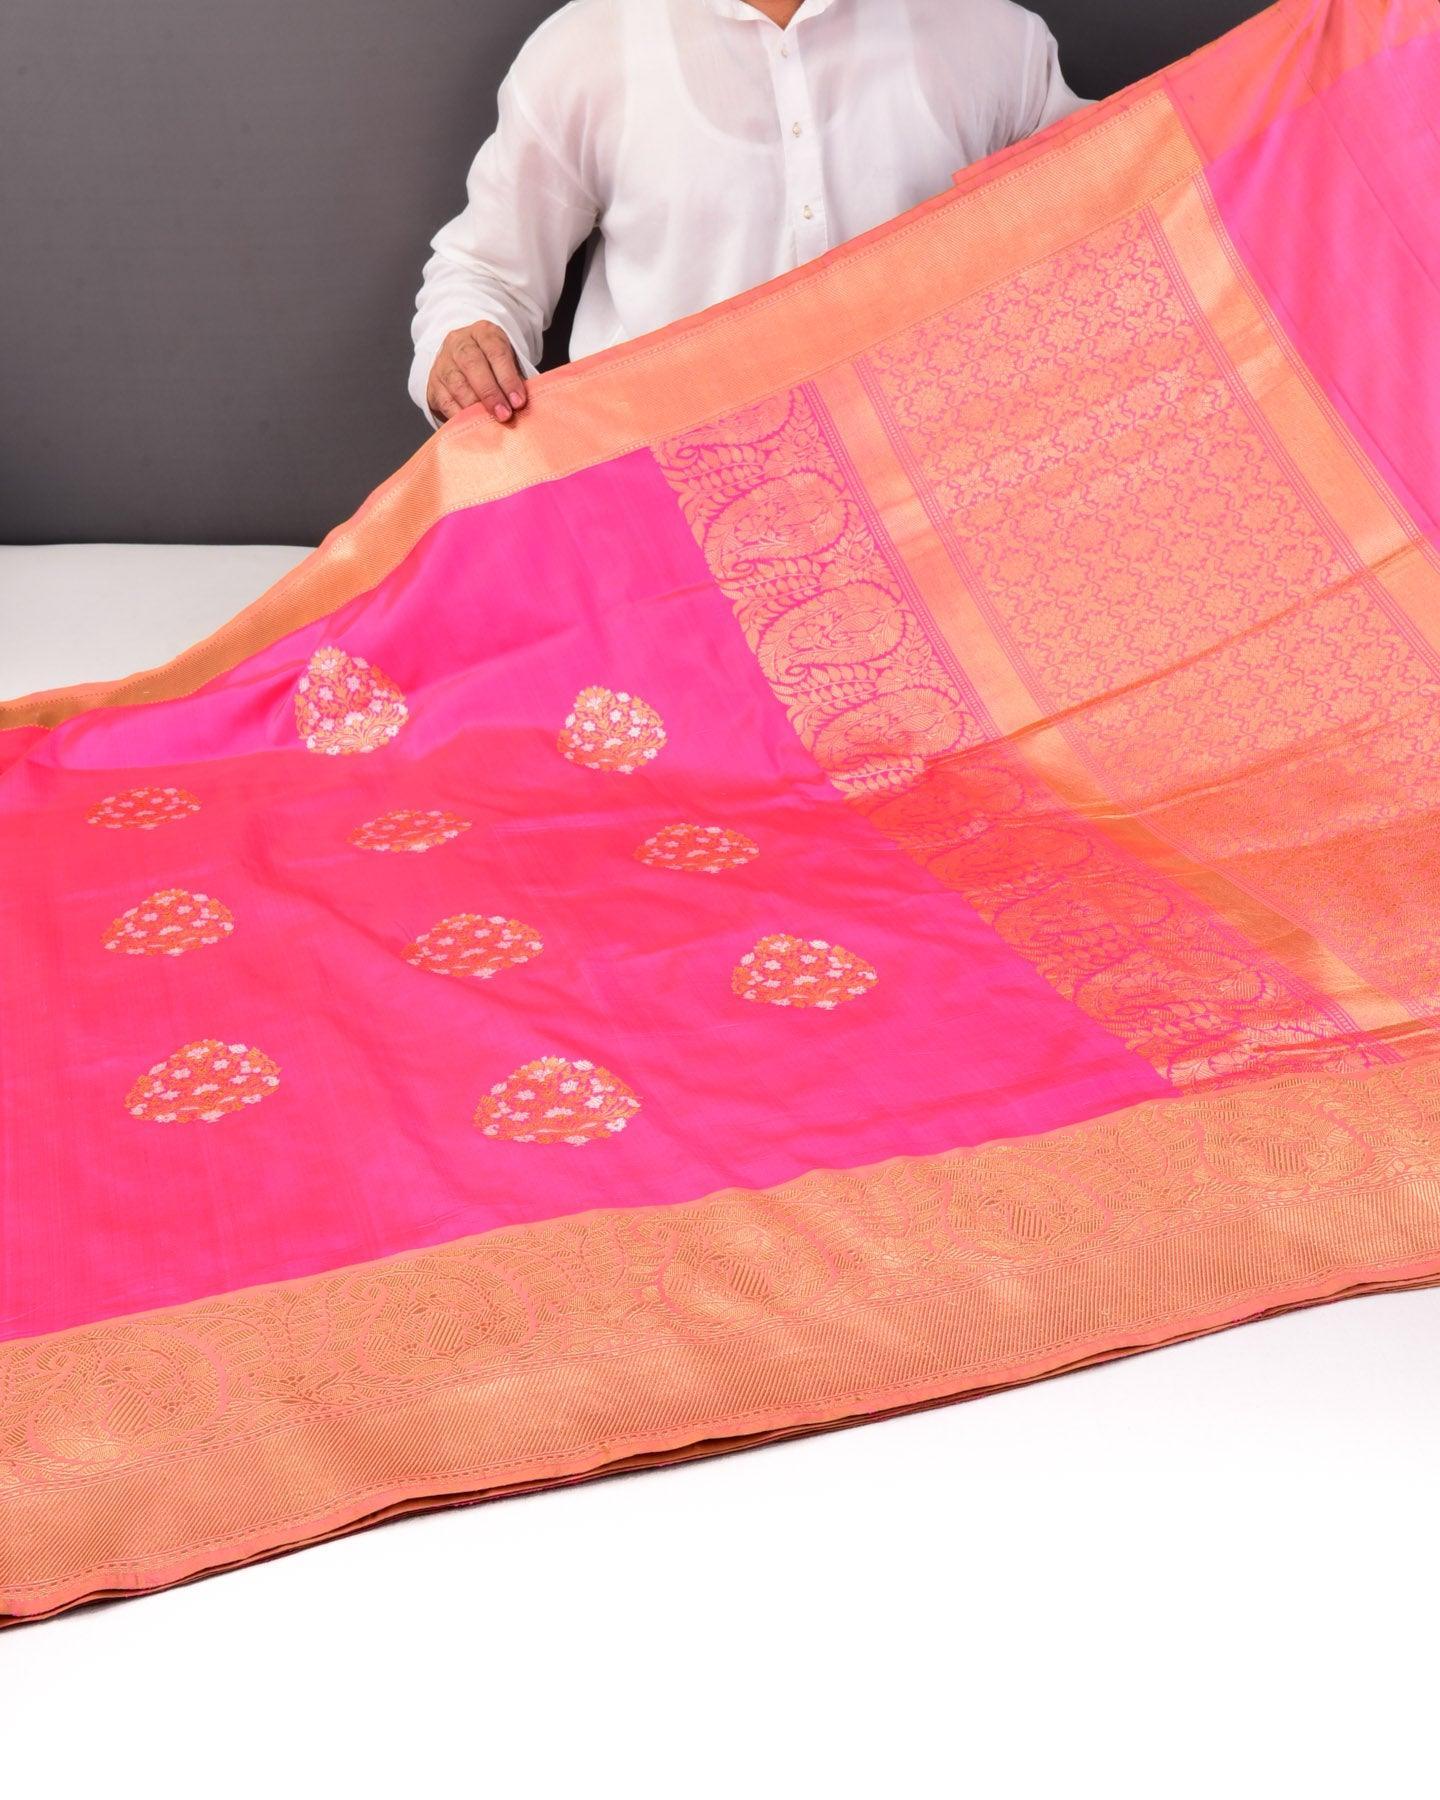 Pink Alfi Sona Rupa Buta Kadhuan Brocade Handwoven Katan Silk Saree - By HolyWeaves, Benares